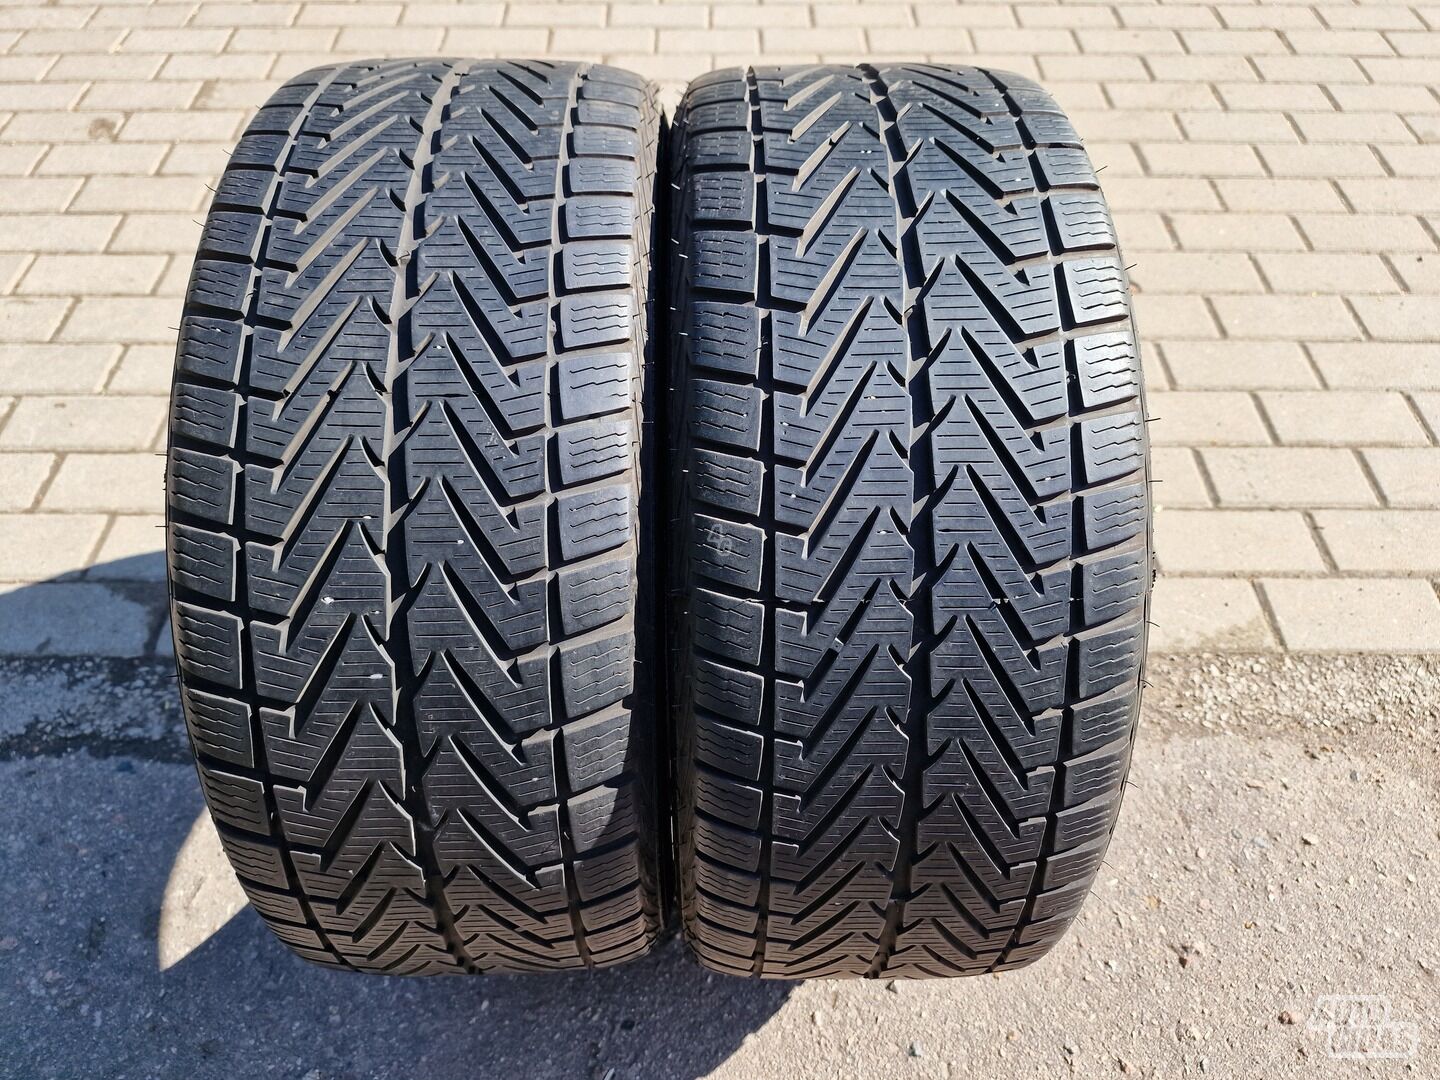 Vredestein Wintrac Xtreme R18 universal tyres passanger car